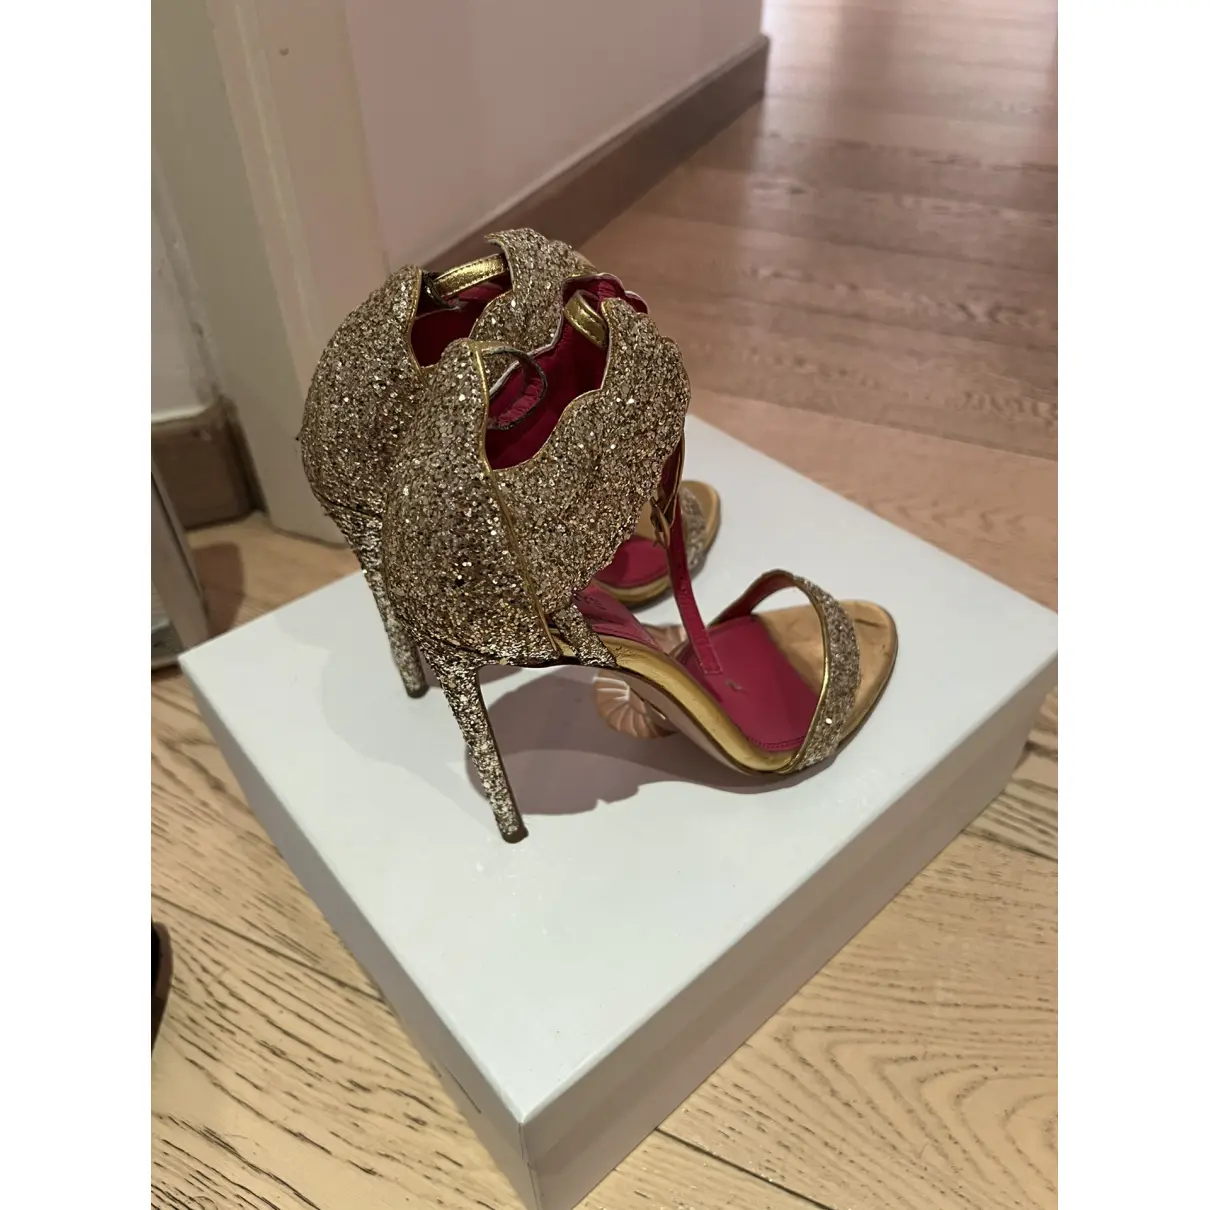 Luxury Oscar Tiye Sandals Women